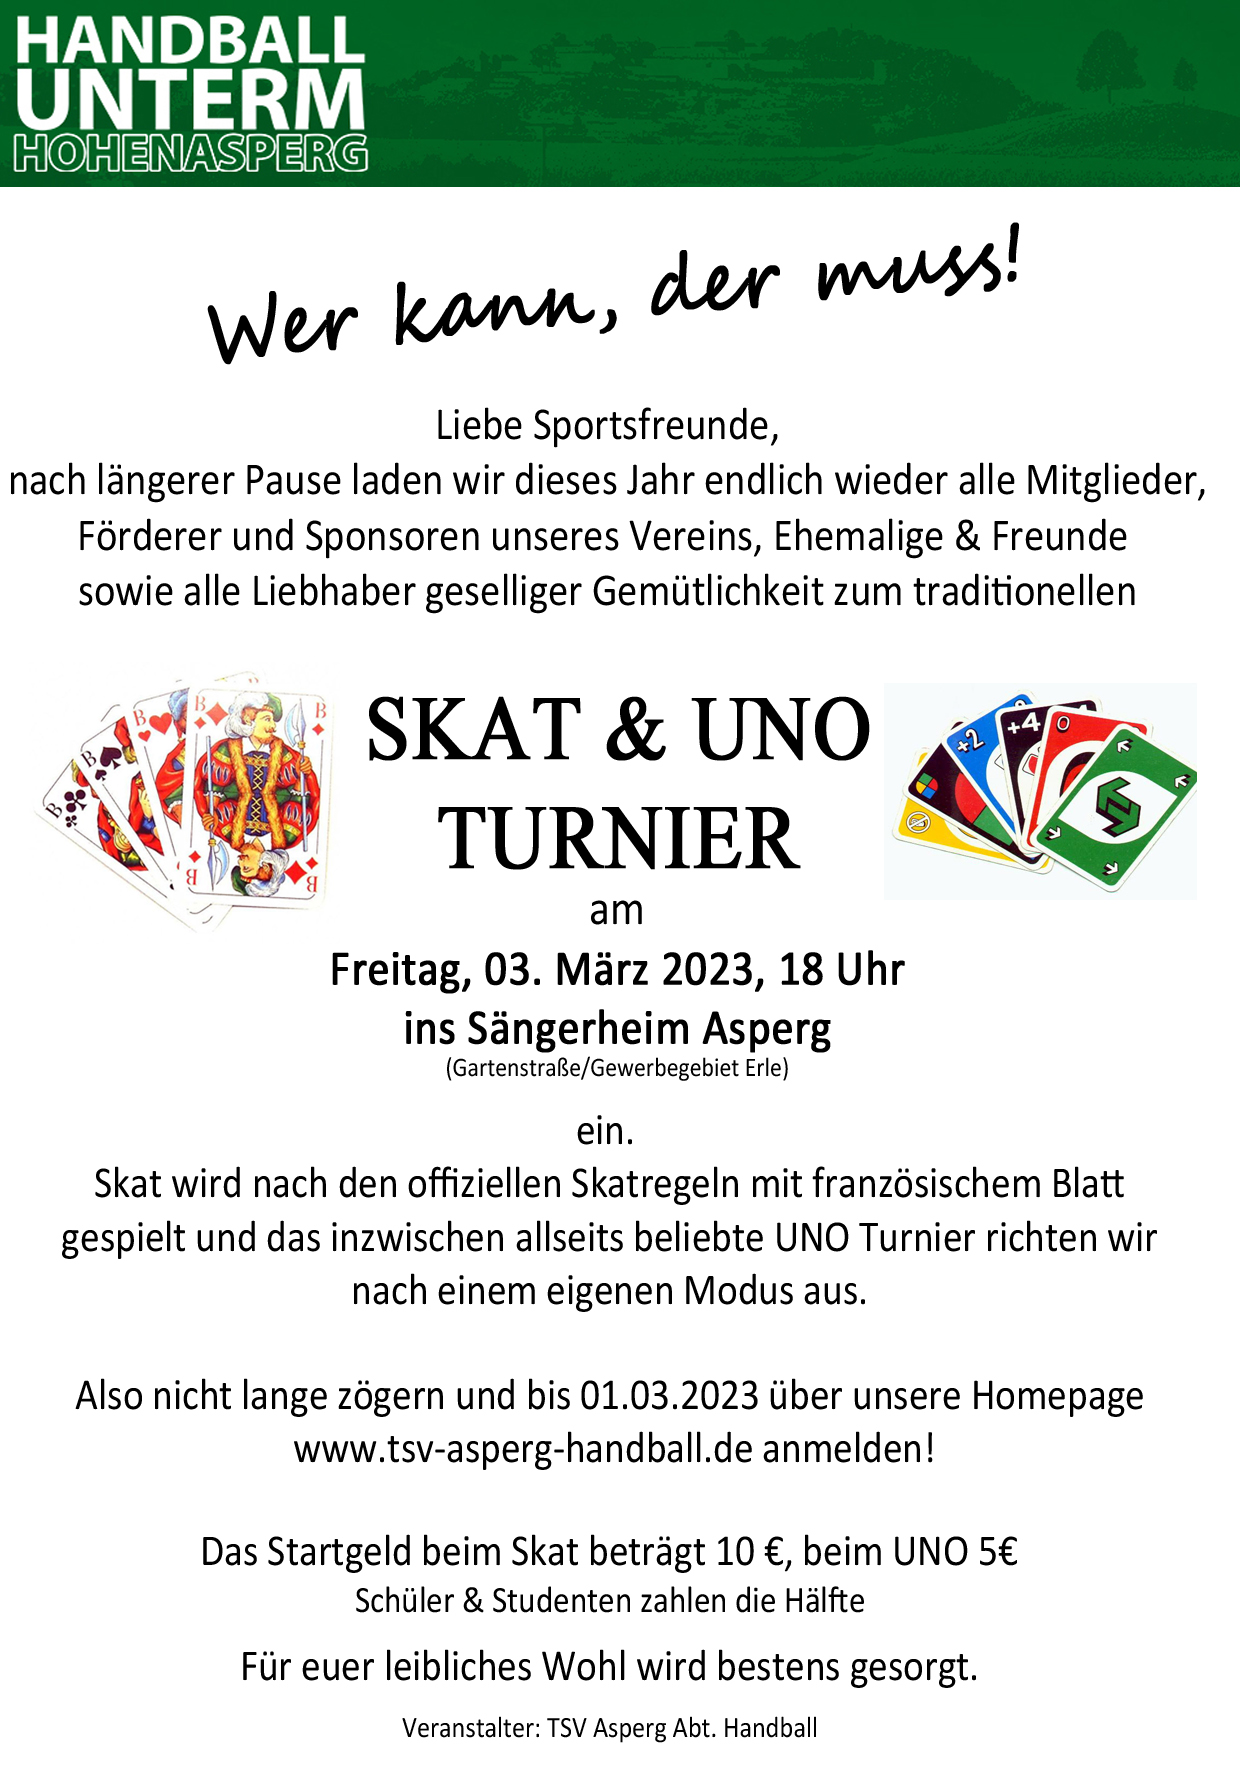 Skat- und UNO-Turnier 2023 im Sängerheim Asperg